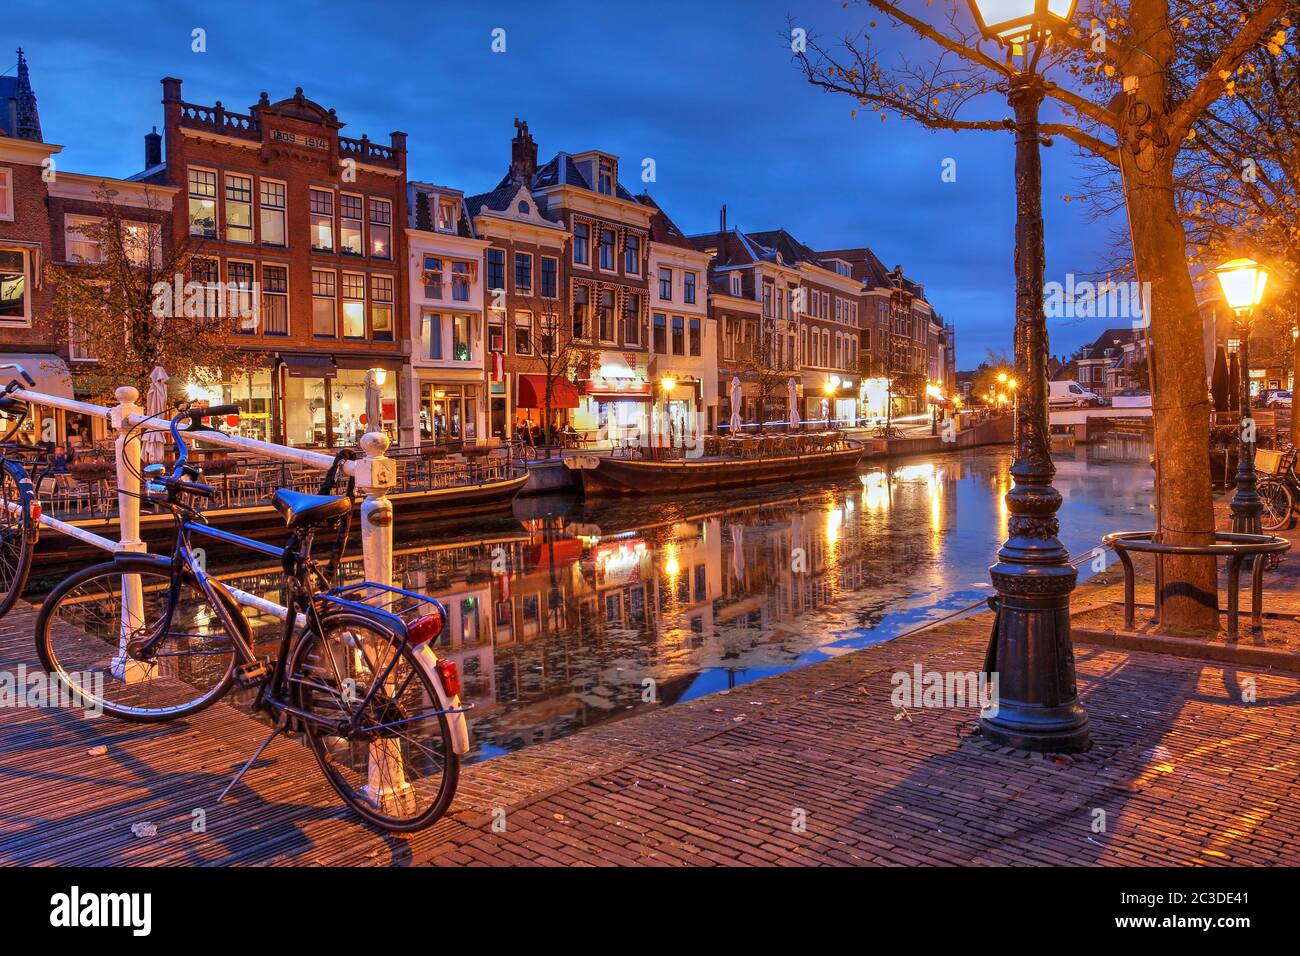 Escena nocturna en Leiden, Holanda con casas antiguas a lo largo del canal Nieuwe Rijn. Foto de stock